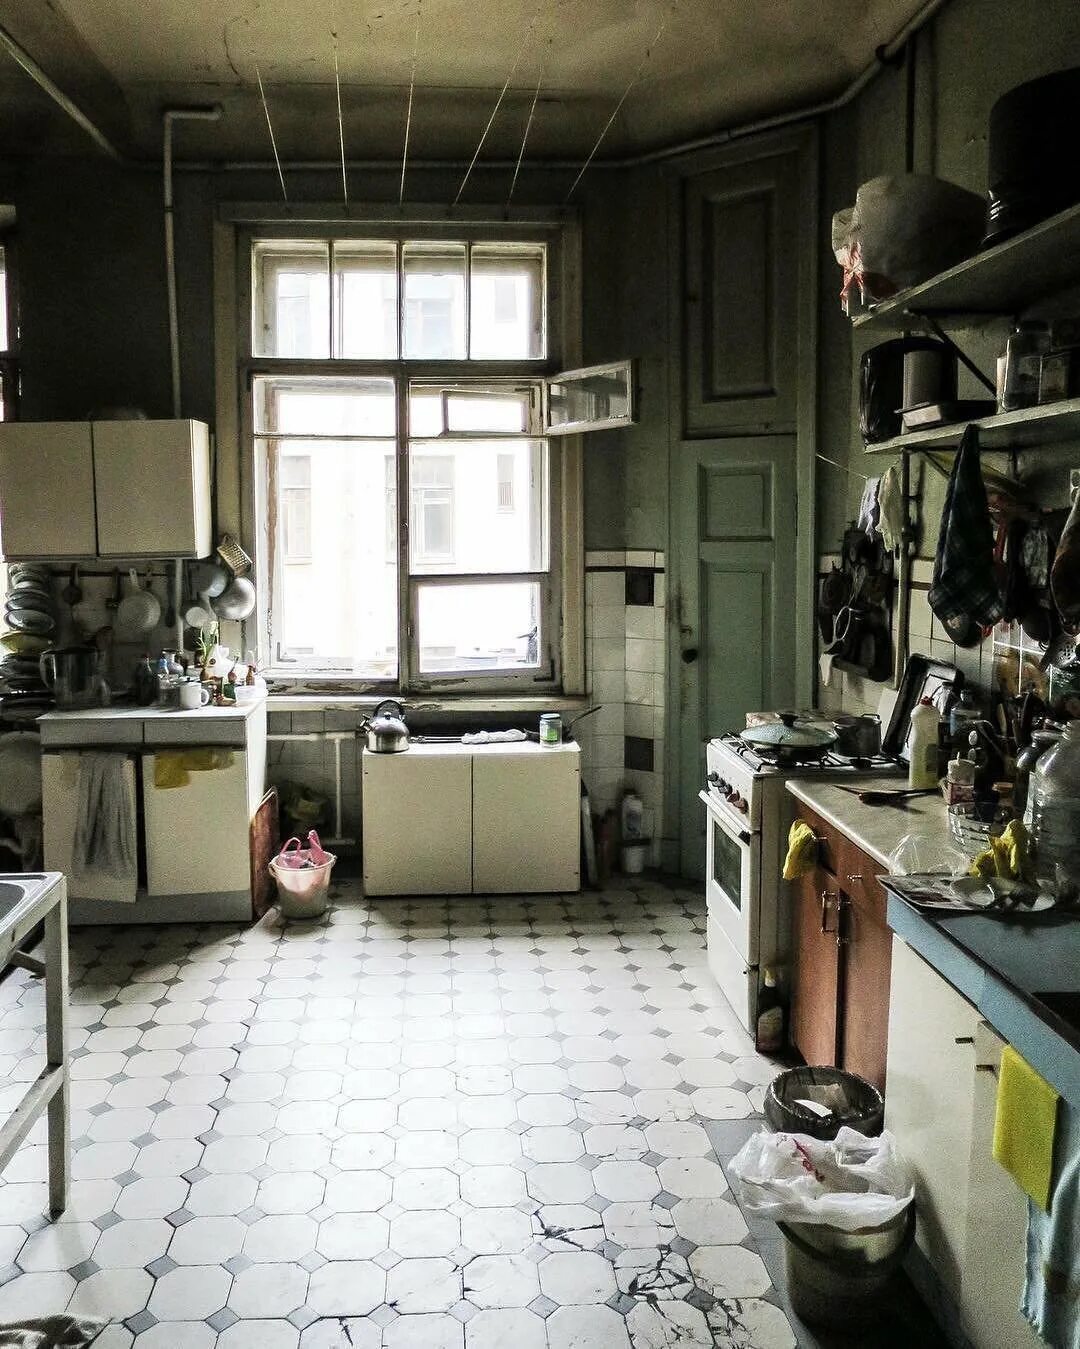 Коммуналка по адресу. Кухня в коммуналке. Кухня в старой квартире. Кухня коммуналки интерьер. Советская кухня.